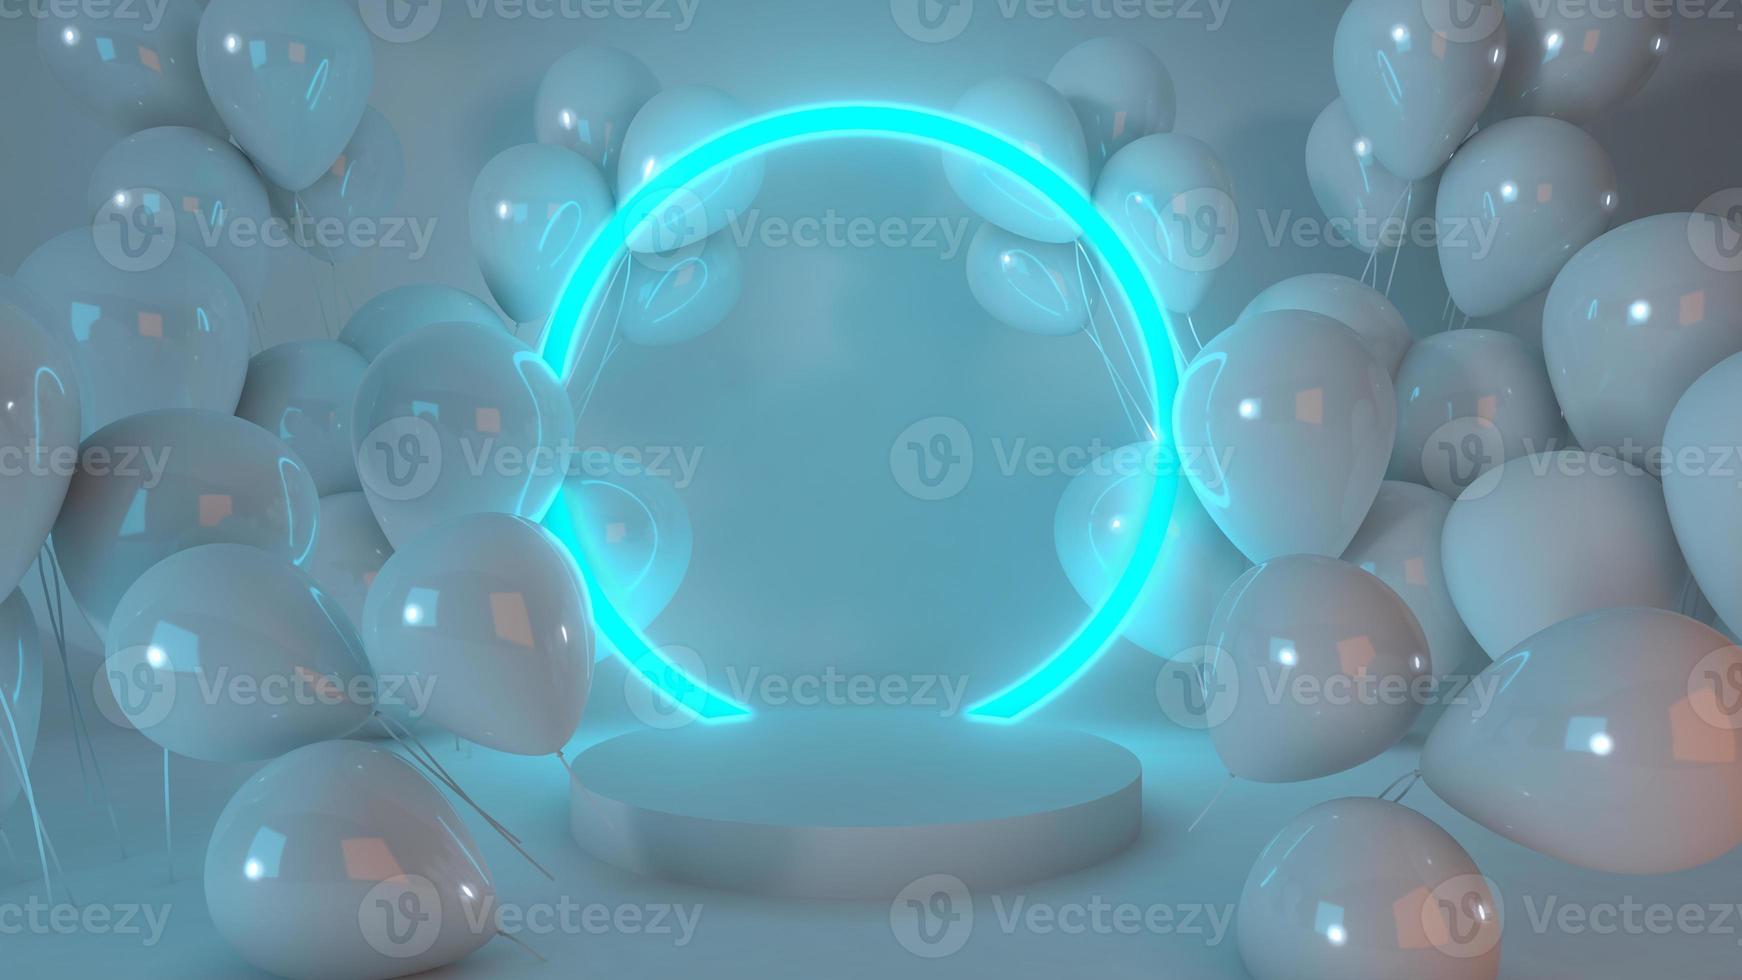 renderização 3D para fundo de brilho de luz círculo azul muitos balões no pódio branco com produto premium foto